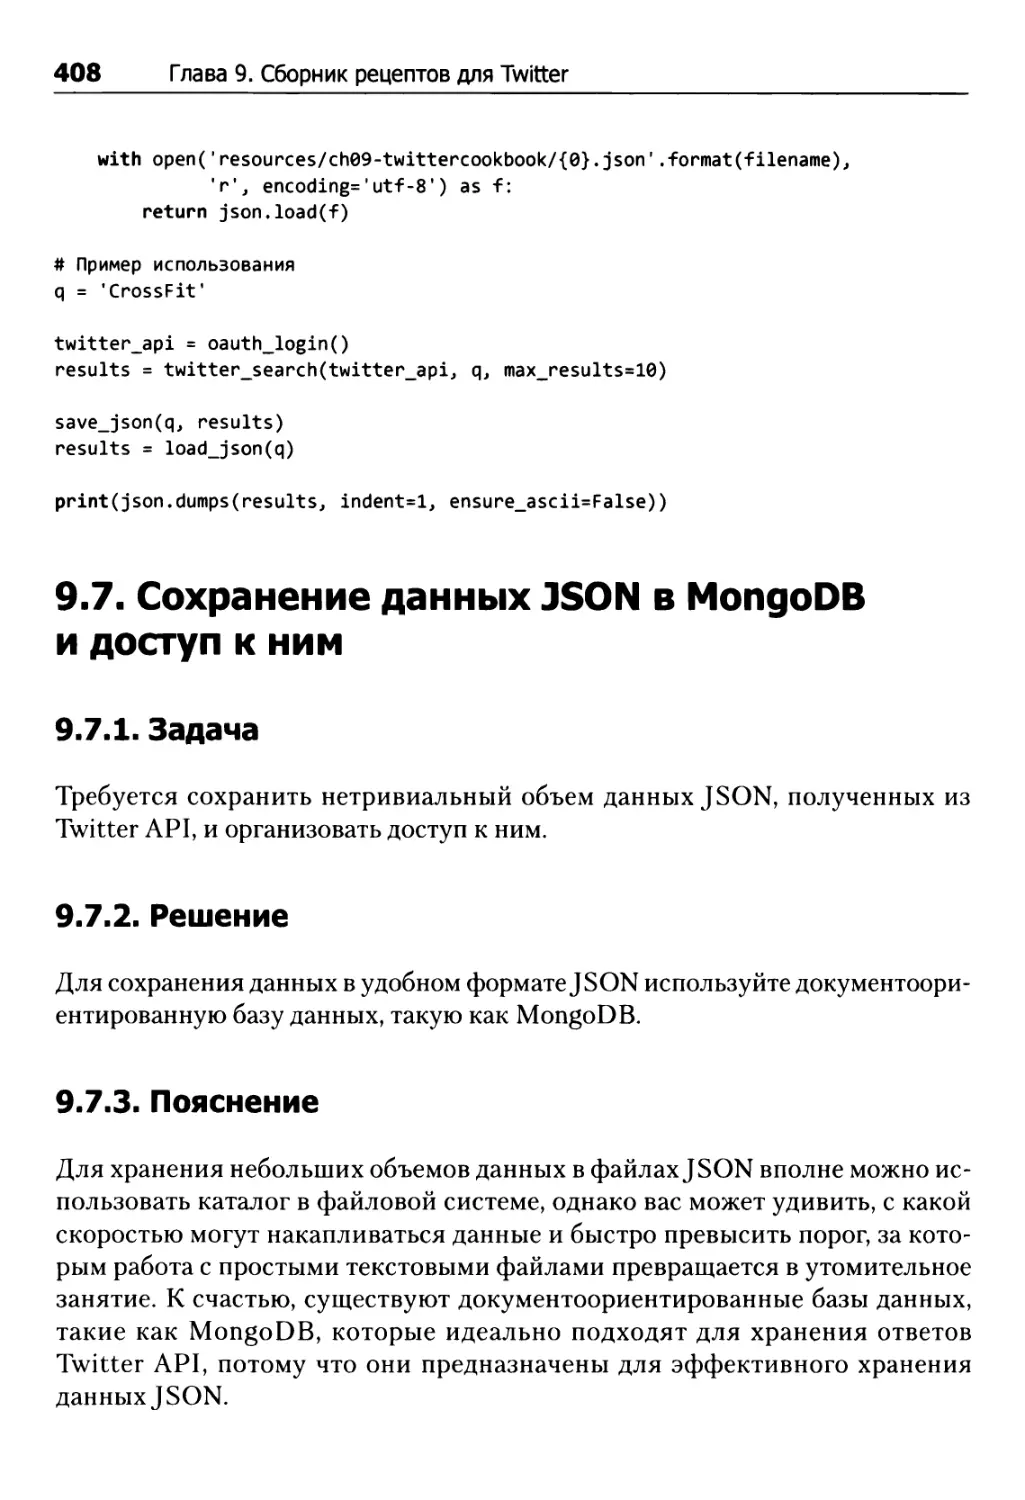 9.7. Сохранение данных JSON в MongoDB и доступ к ним
9.7.1. Задача
9.7.2. Решение
9.7.3. Пояснение